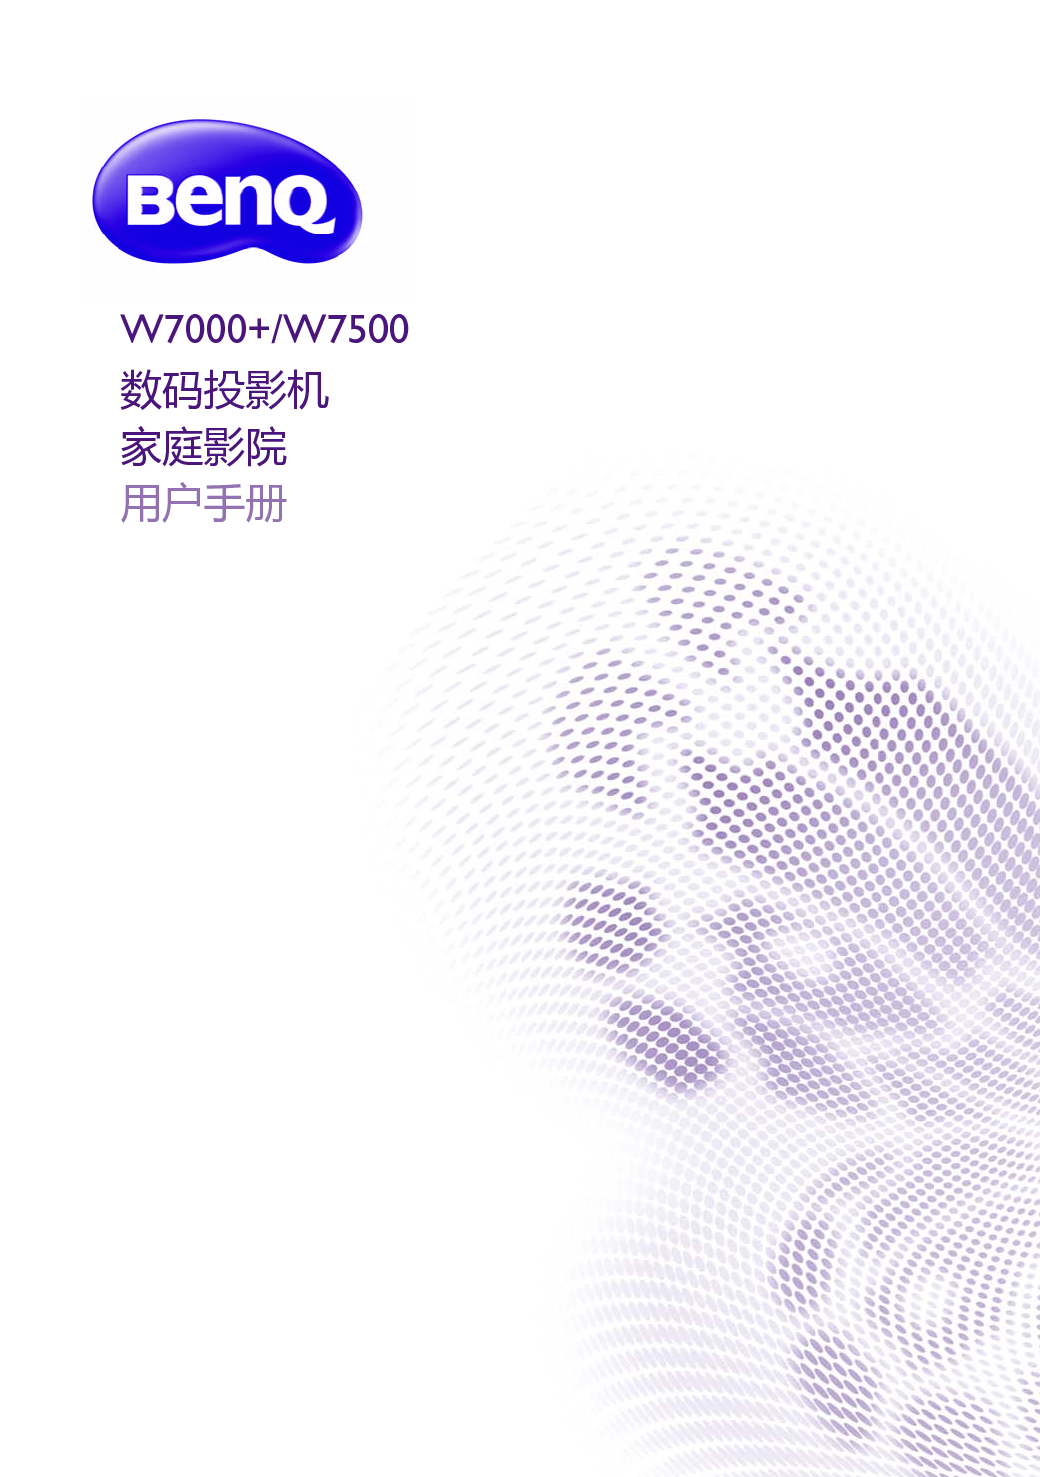 明基 Benq W7000+ 用户手册 封面